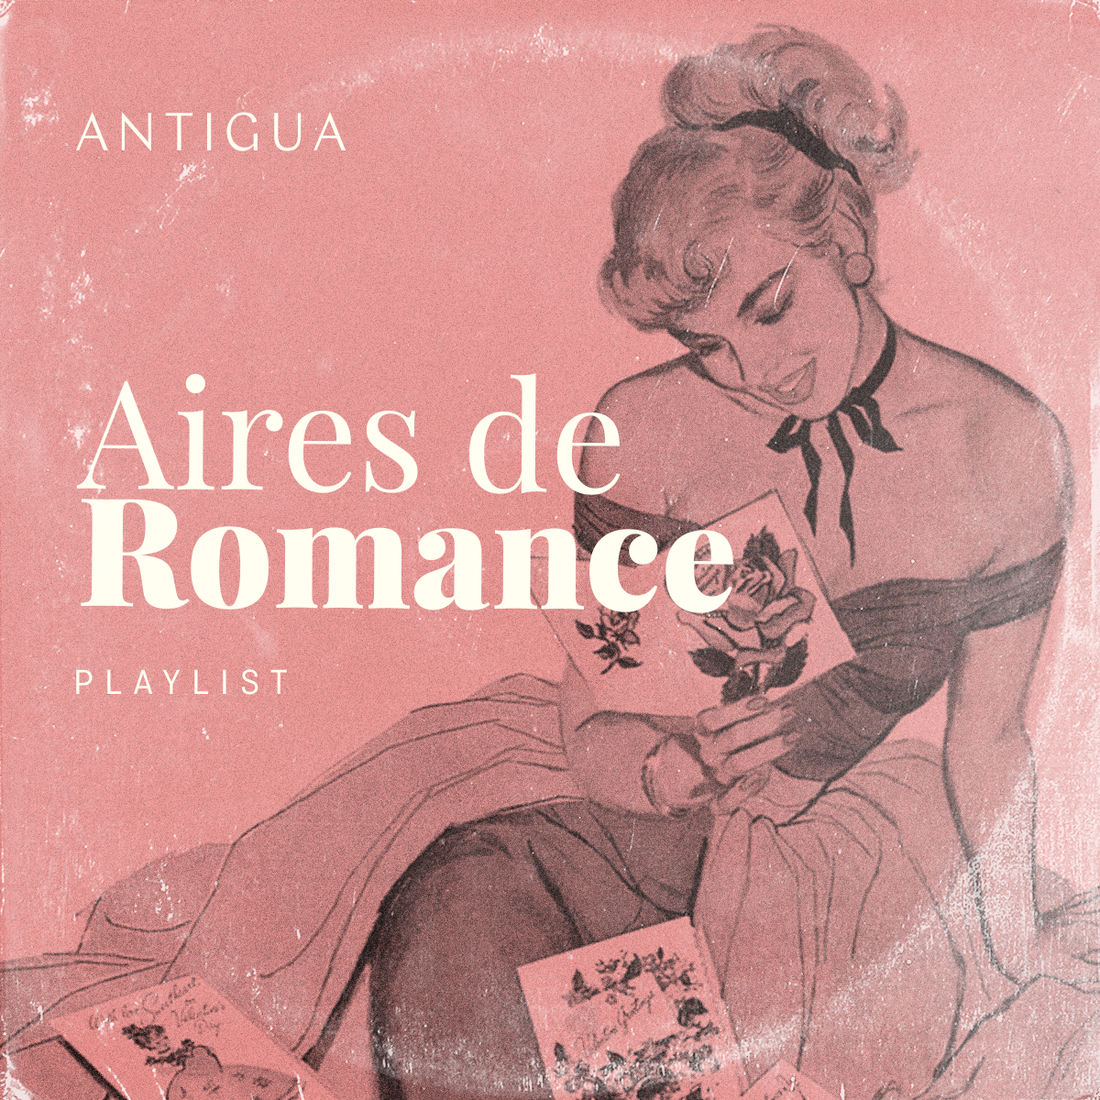 Música Antigua: con aires de romance